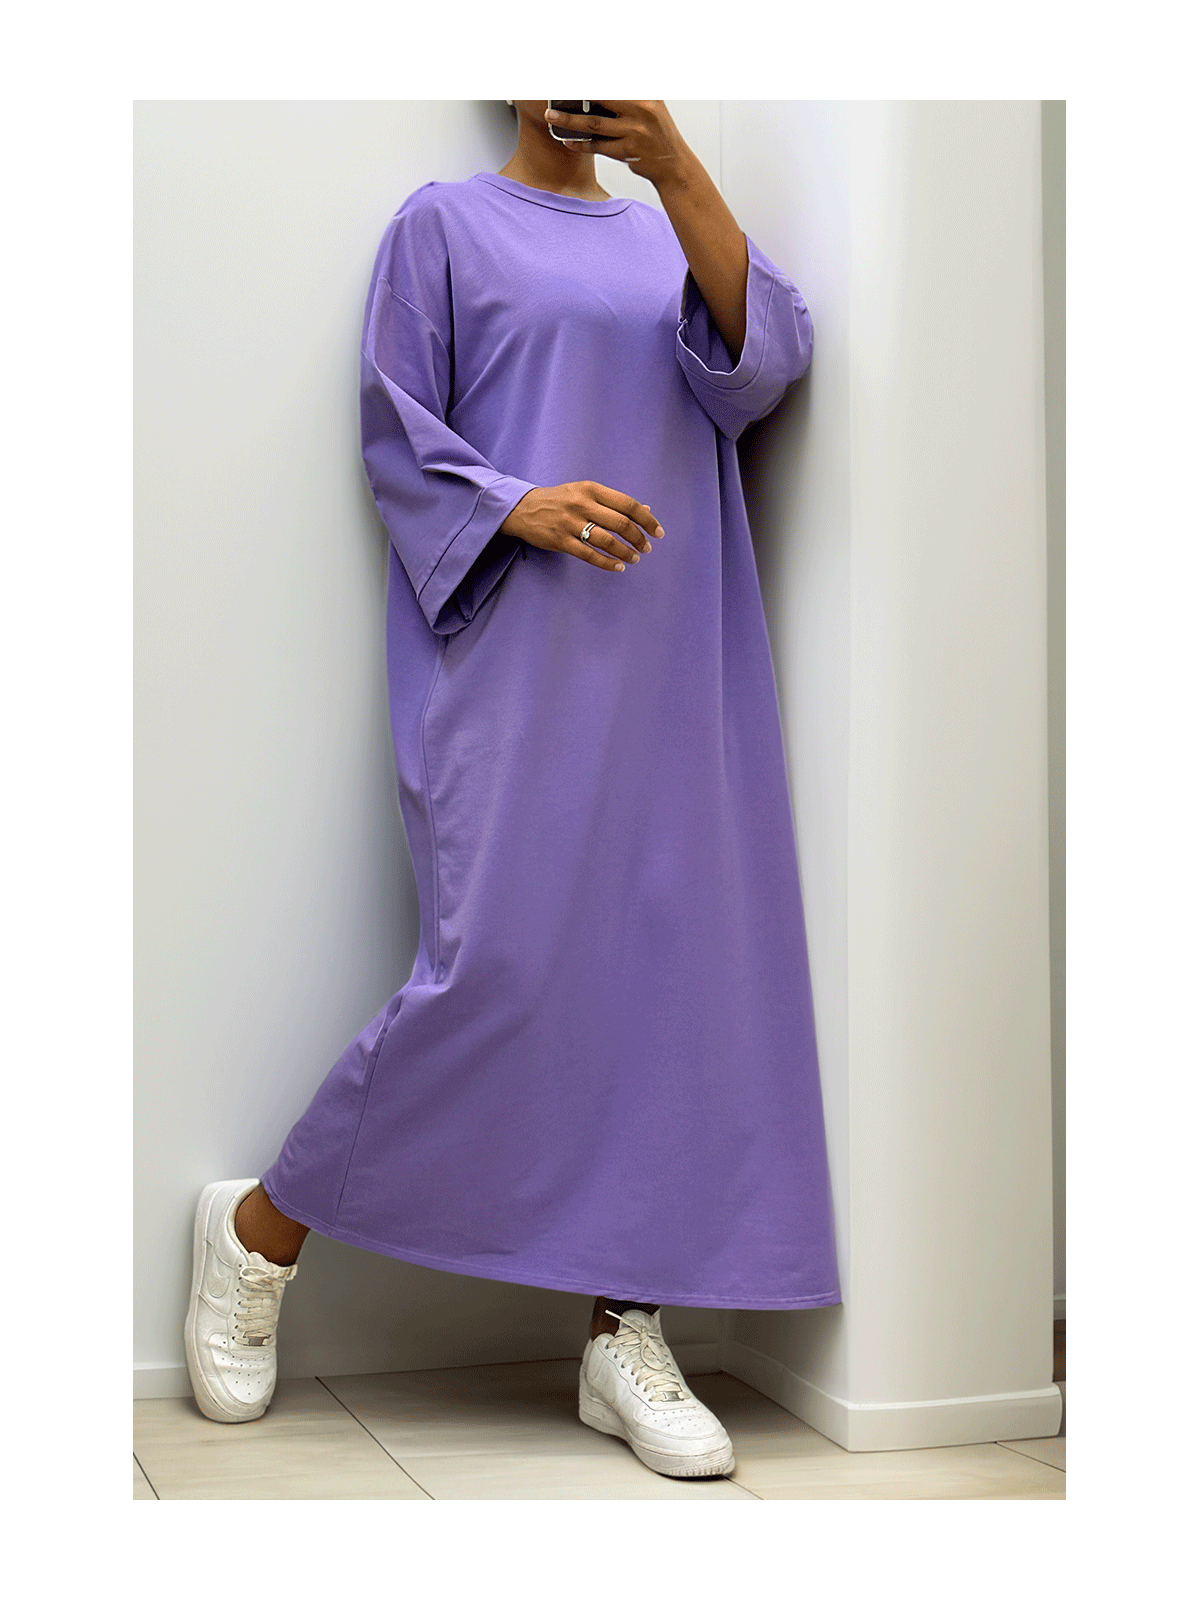 Longue robe over size en coton lilas très épais - 7